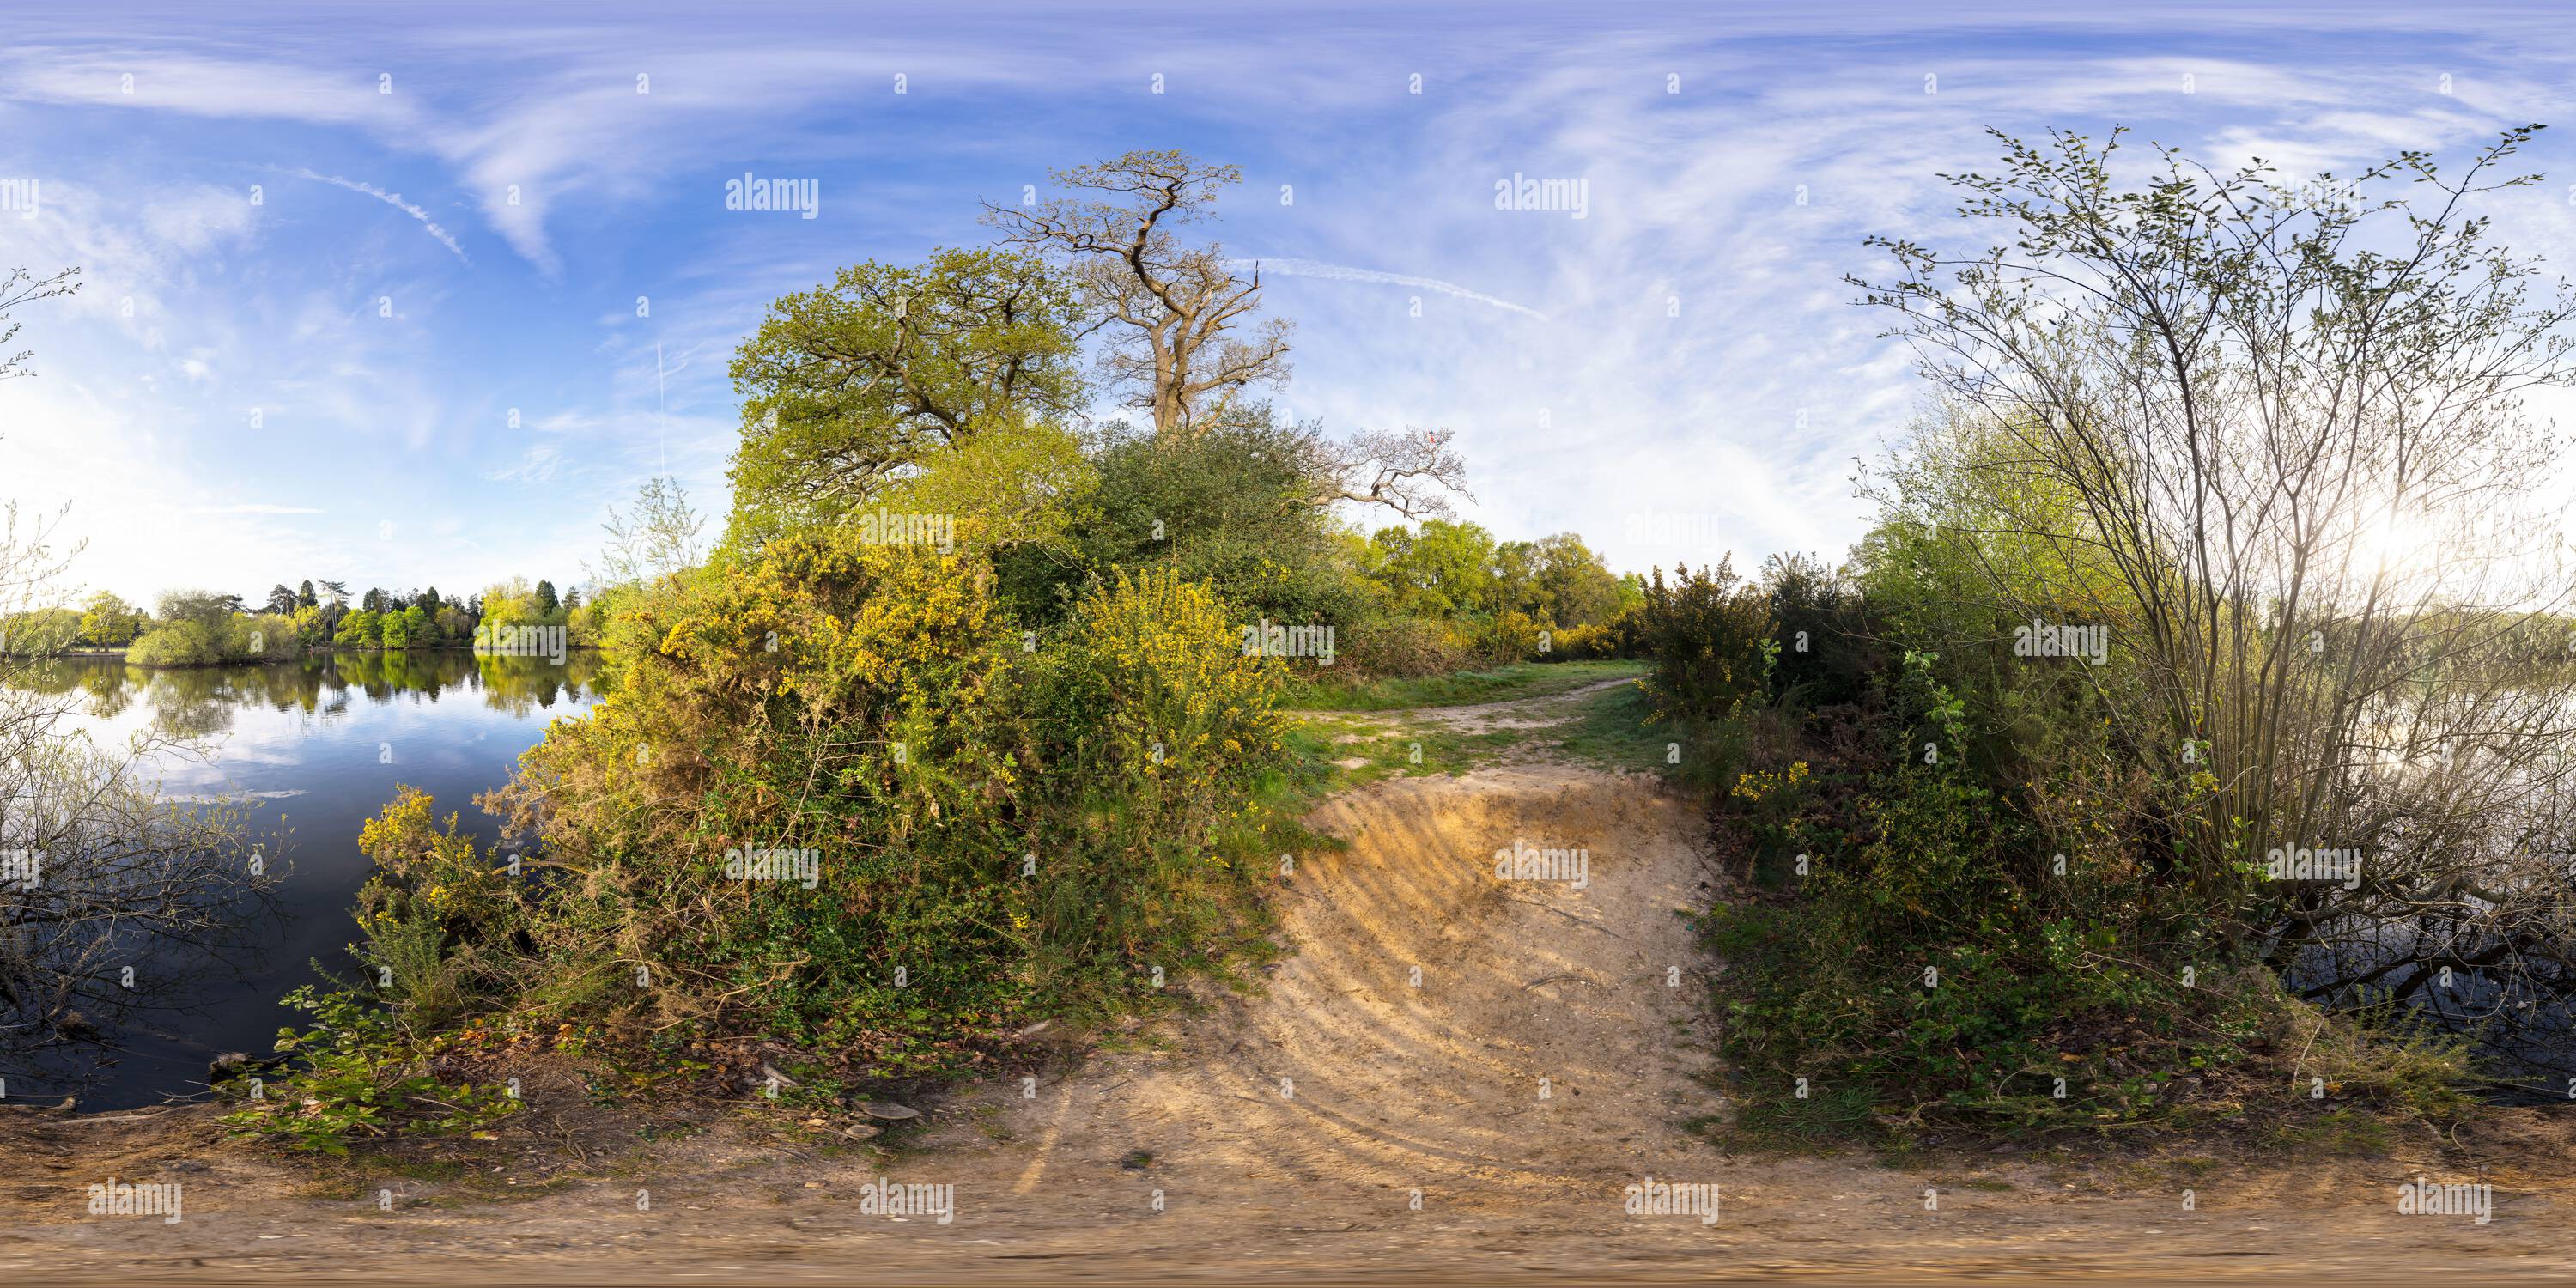 Visualizzazione panoramica a 360 gradi di Il Cemetery Lake a Southampton Common in primavera. Southampton, Inghilterra.